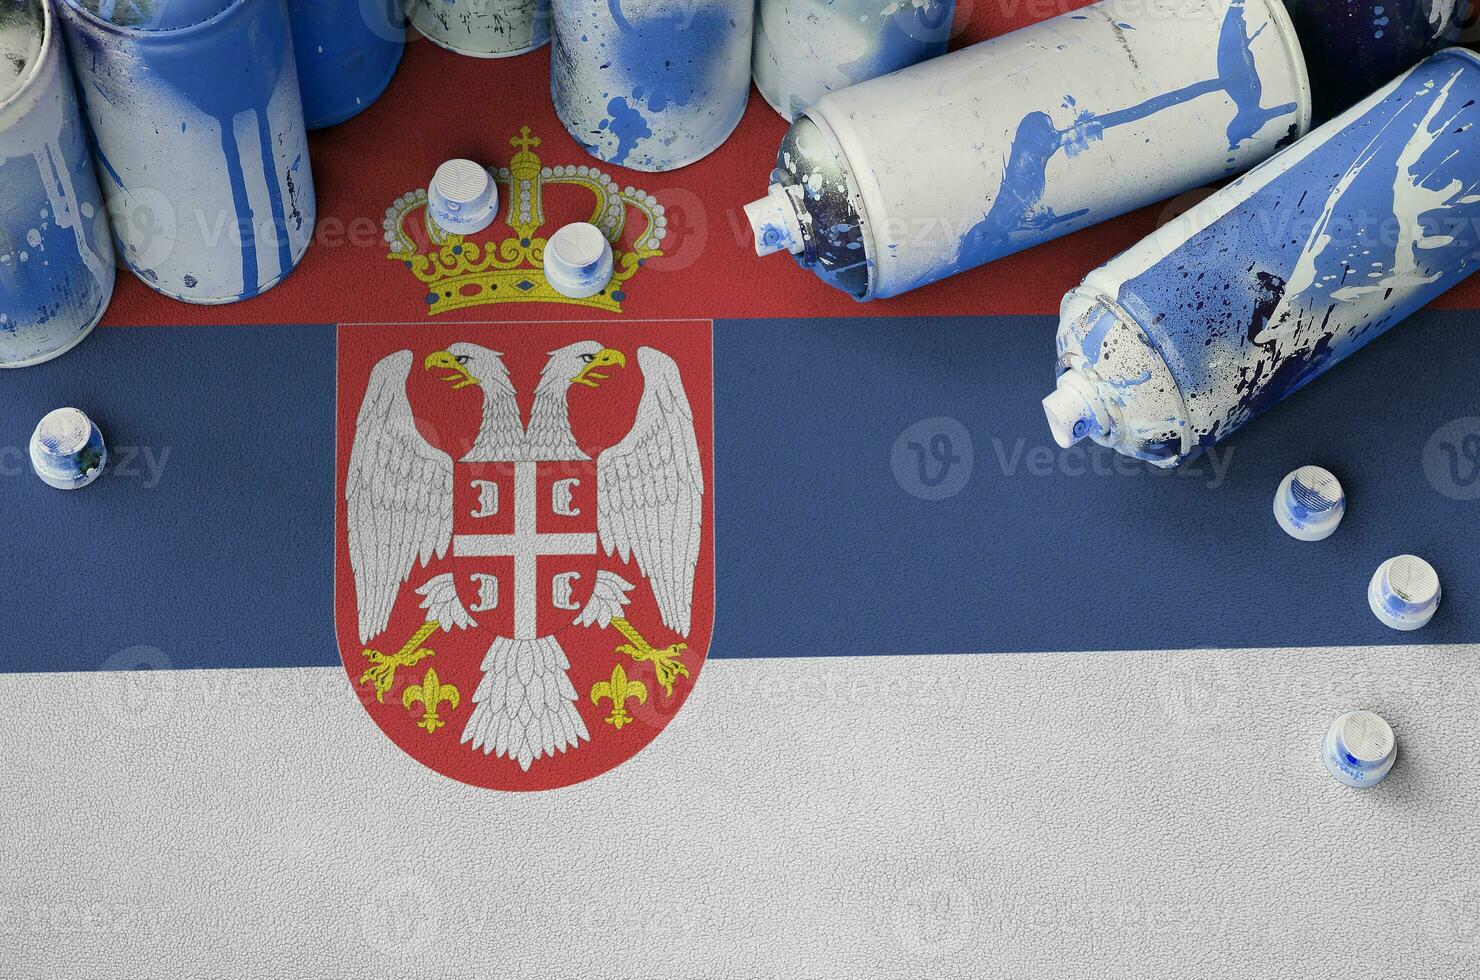 serbia bandera y pocos usado aerosol rociar latas para pintada cuadro. calle Arte cultura concepto foto